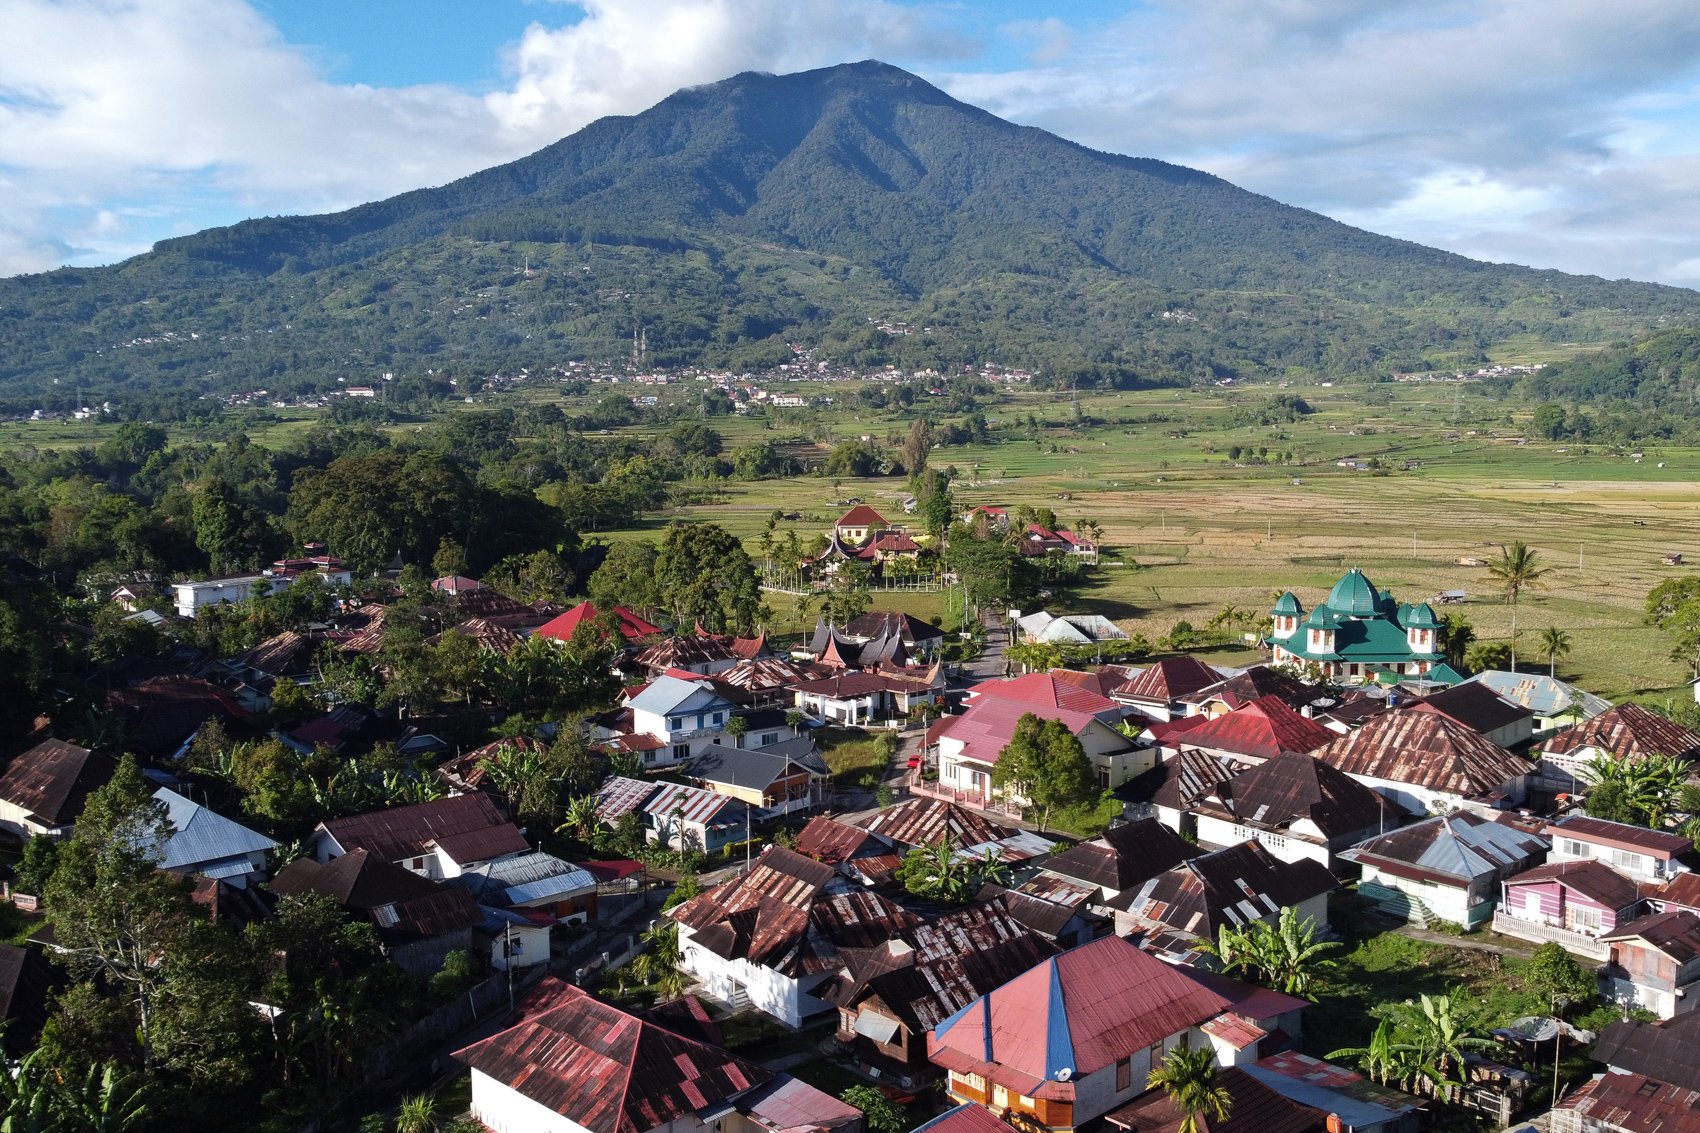 Suasana sentra kerajinan perak Nagari Koto Gadang dengan latar belakang Gunung Singgalang di Kabupaten Agam, Sumatera Barat.